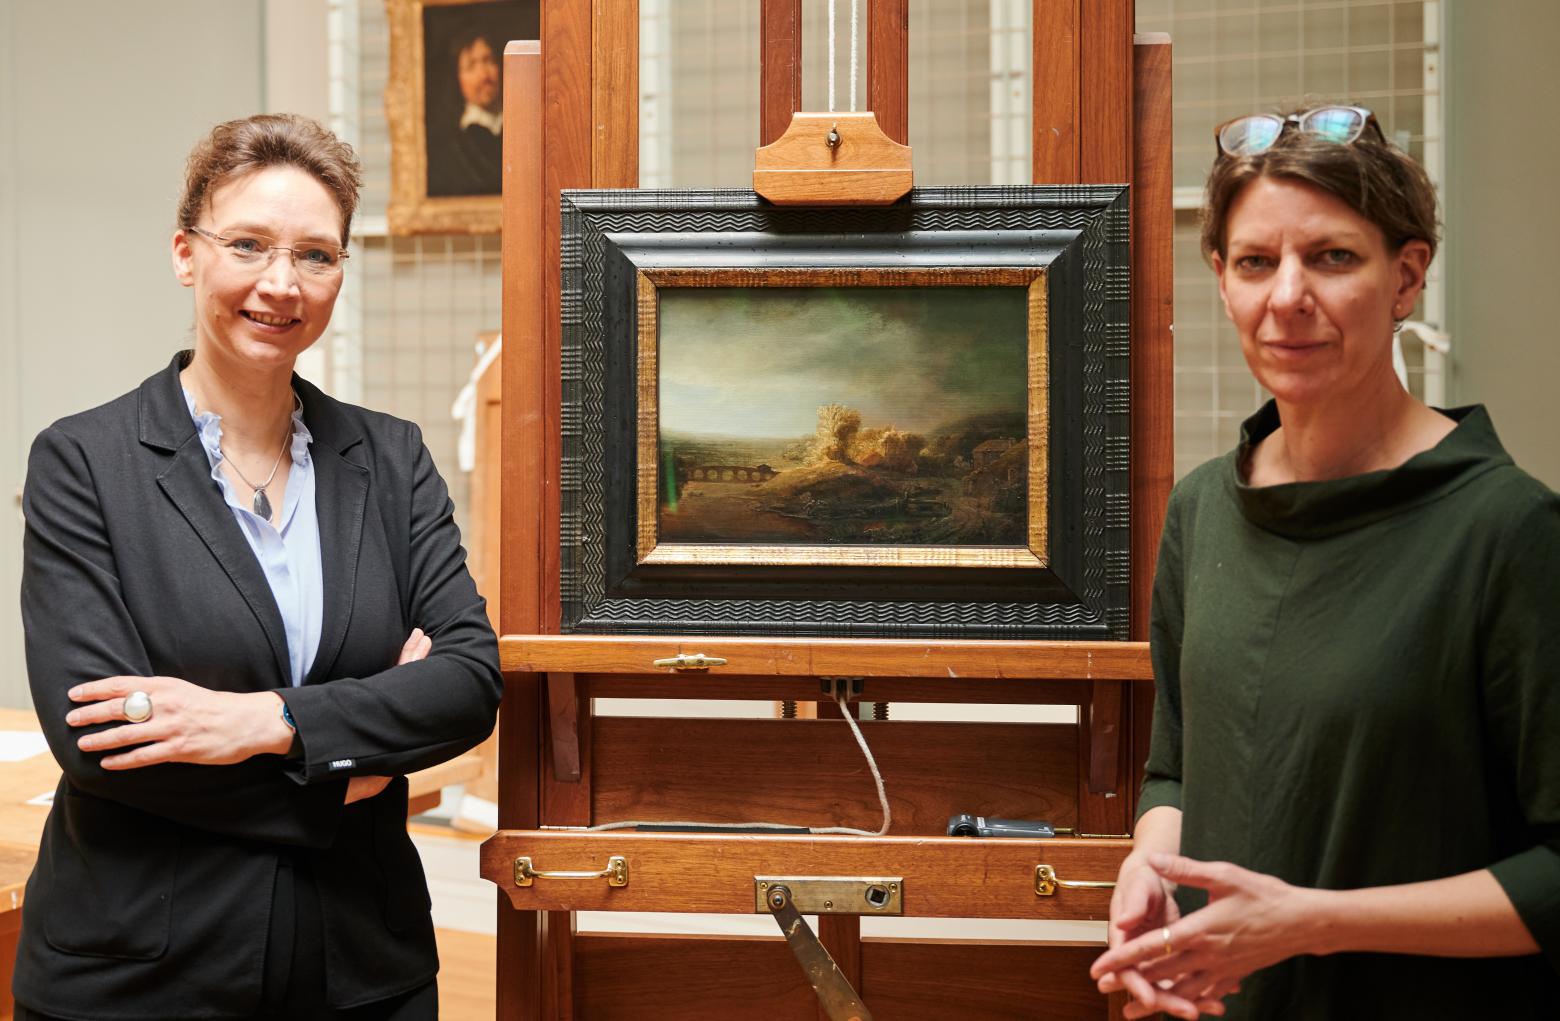 Dagmar Hirschfelder (l), Direktorin der Gemäldegalerie, und Katja Kleinert, Kuratorin der Gemäldegalerie, neben dem Gemälde "Landschaft mit Bogenbrücke" in der Restaurierungswerkstatt der Gemäldegalerie